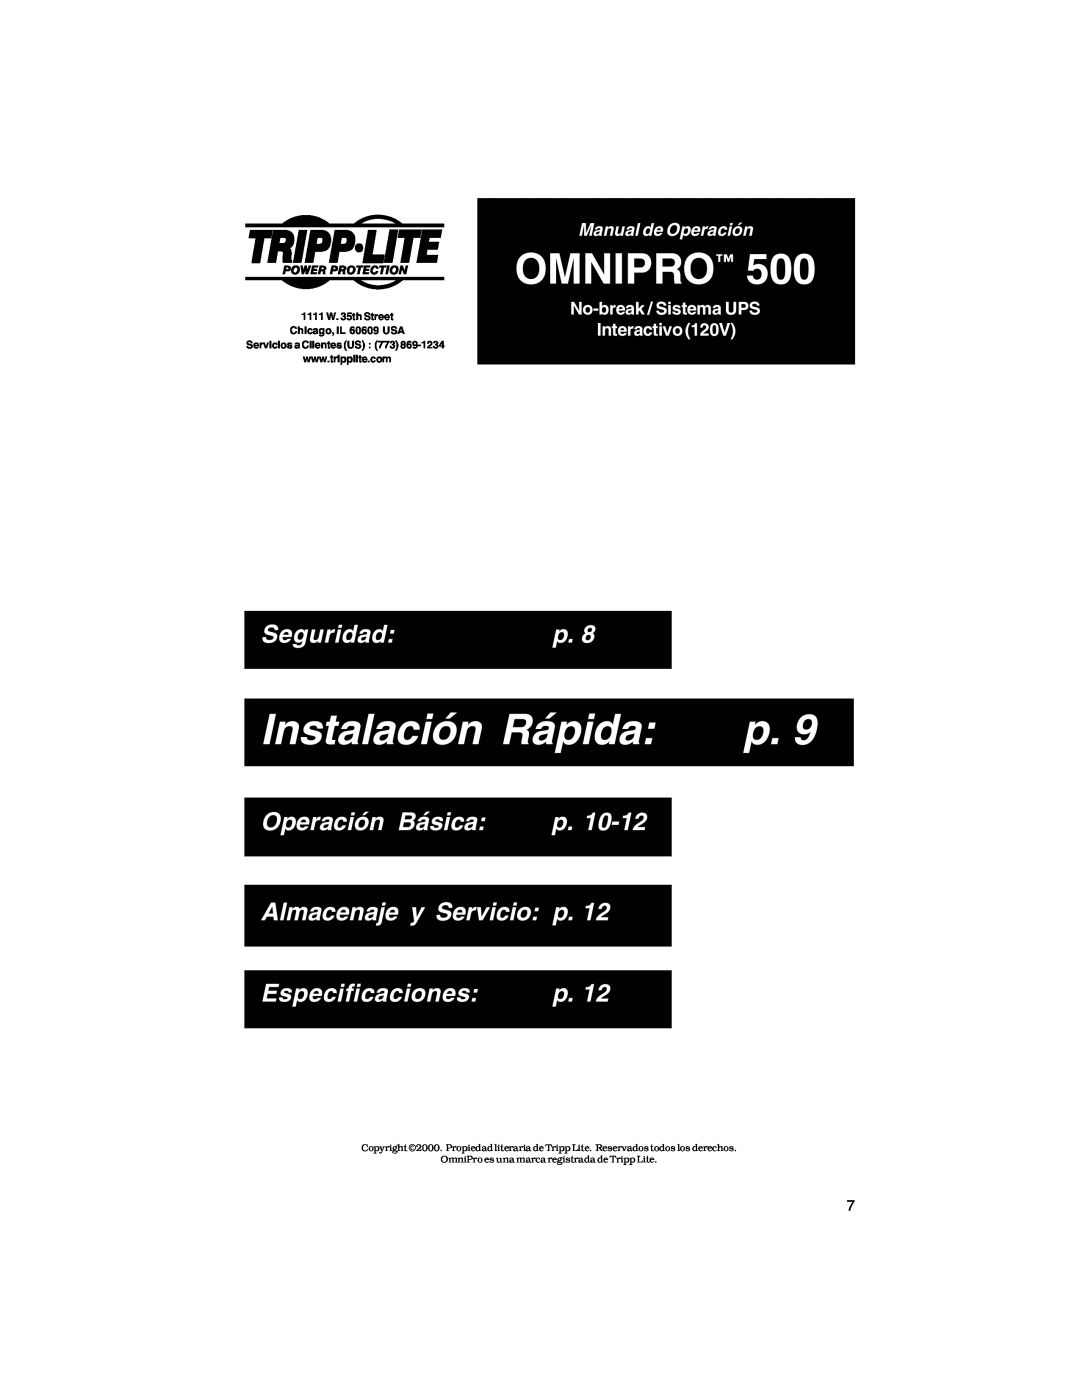 Tripp Lite OmniPro500 Instalación Rápida, Seguridad, Operación Básica, Almacenaje y Servicio p, Especificaciones, Omnipro 